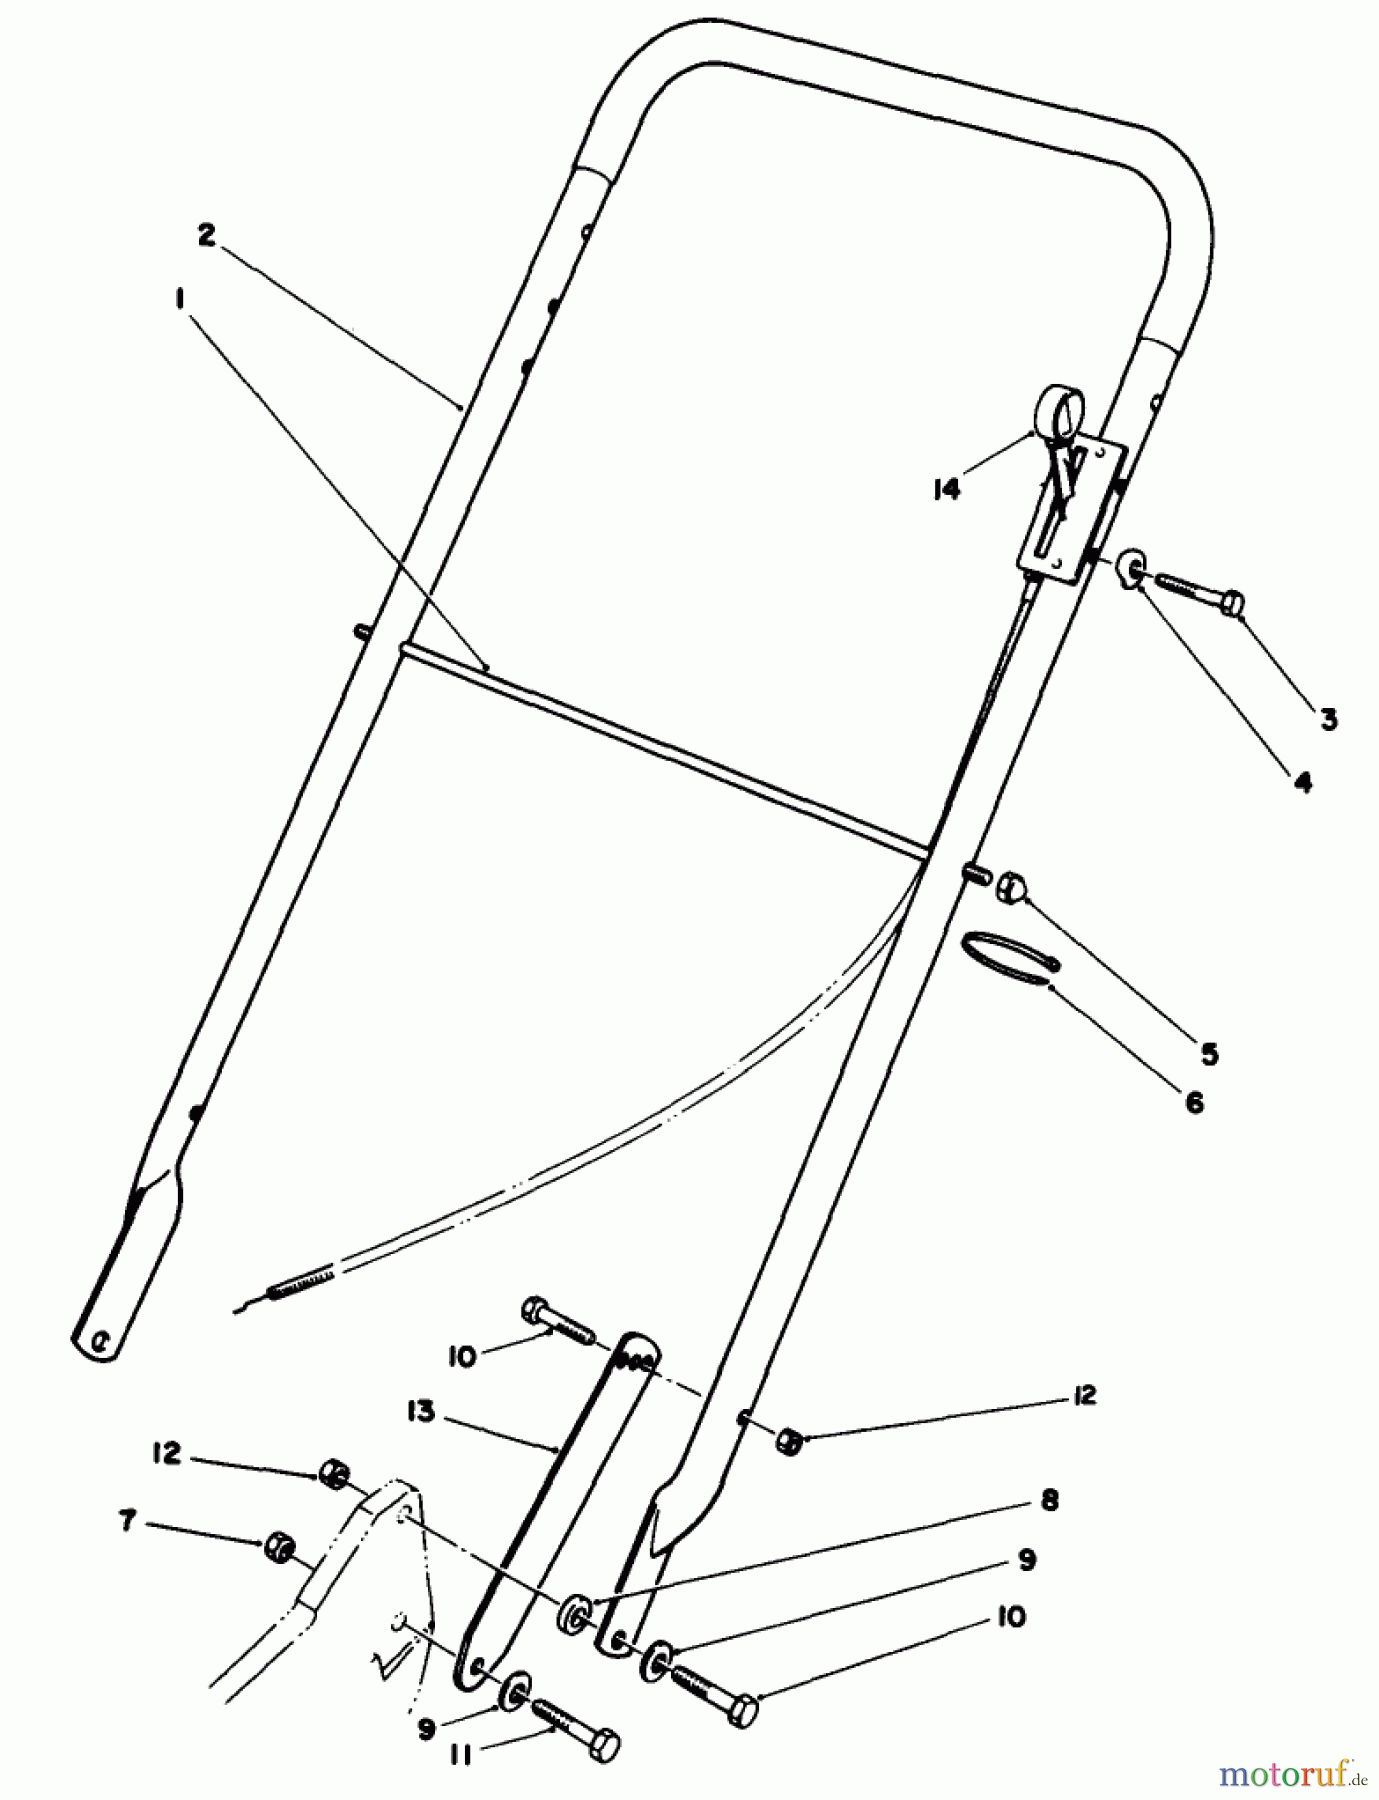  Toro Neu Mowers, Walk-Behind Seite 2 22030 - Toro Lawnmower, 1988 (8000001-8999999) HANDLE ASSEMBLY (MODEL 22030)